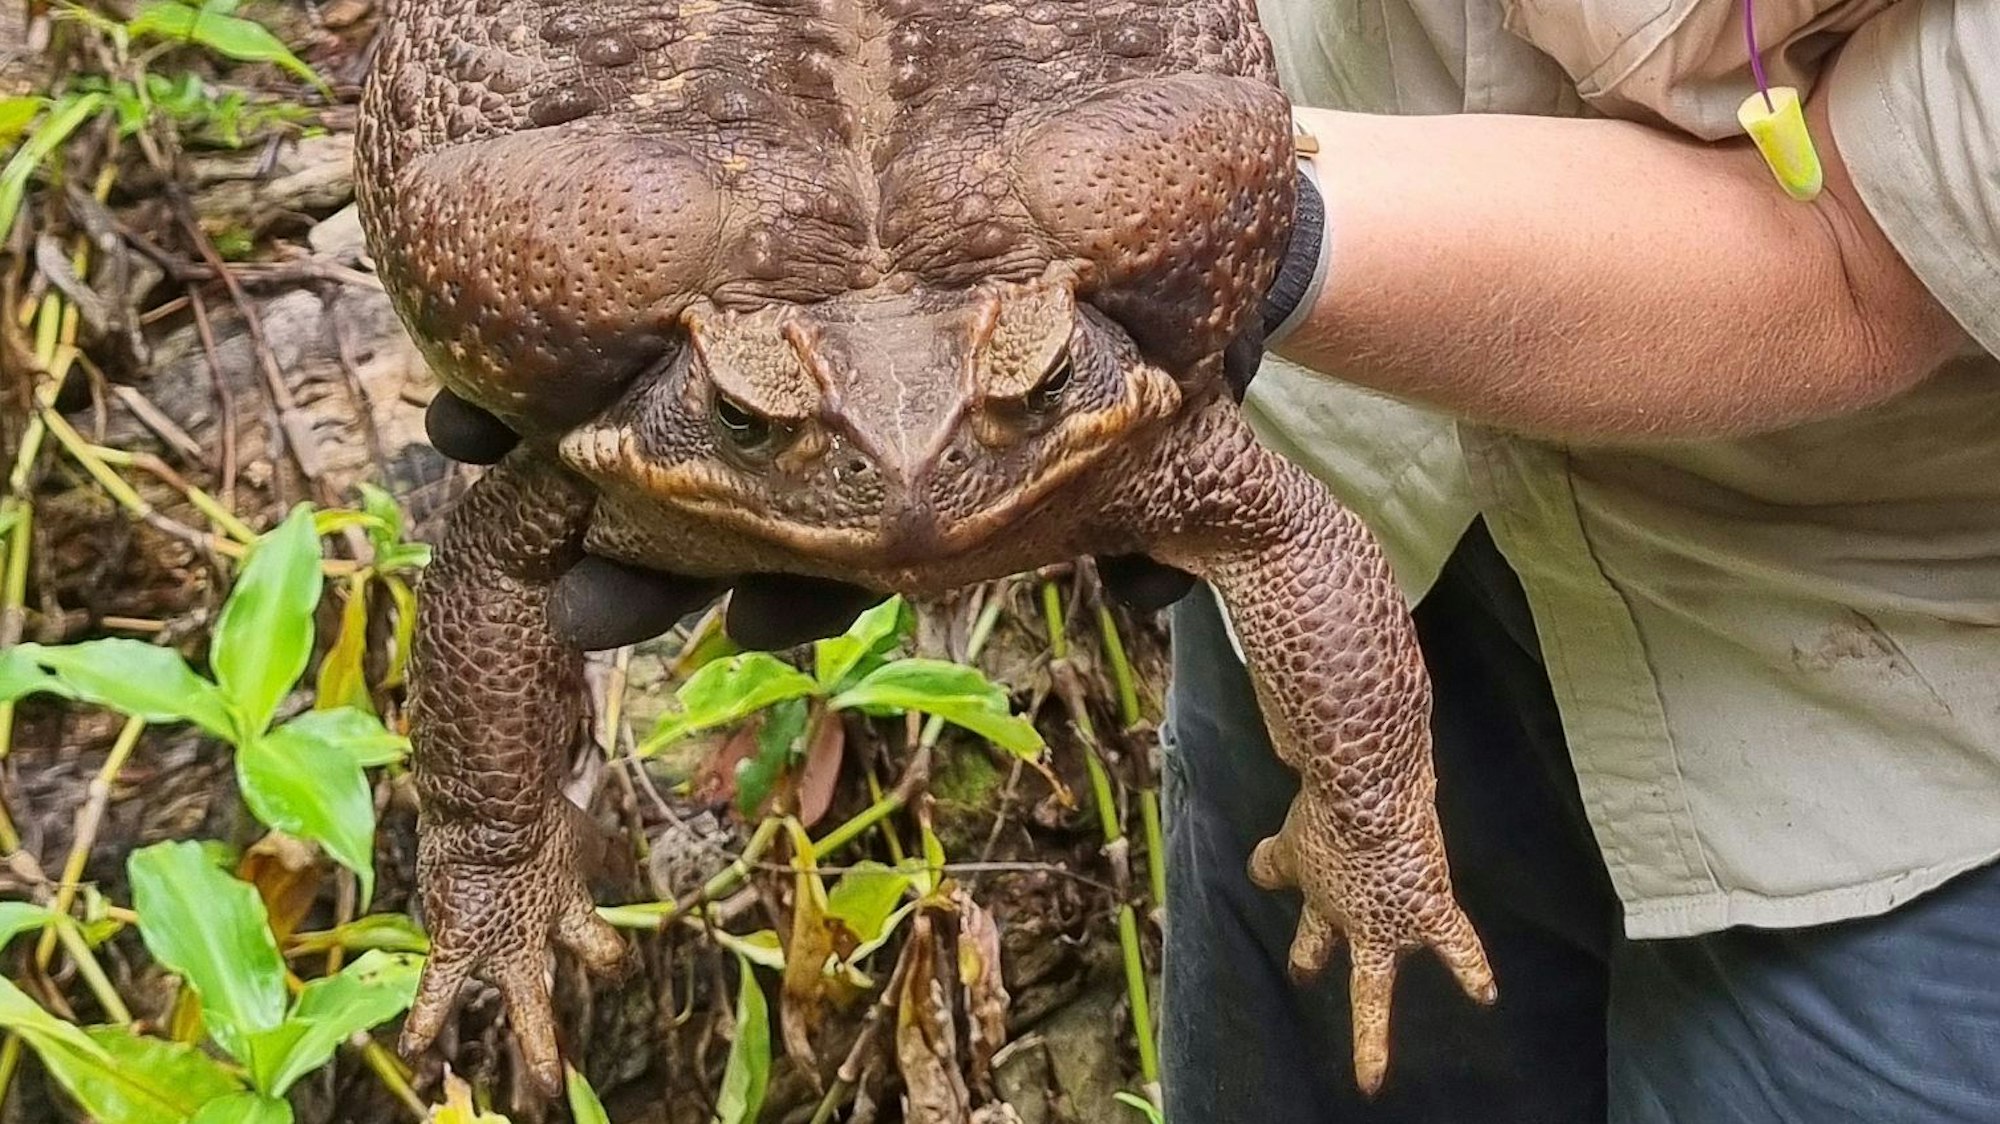 Die riesige Aga-Kröte wurde im australischen Bundesstaat Queensland entdeckt.